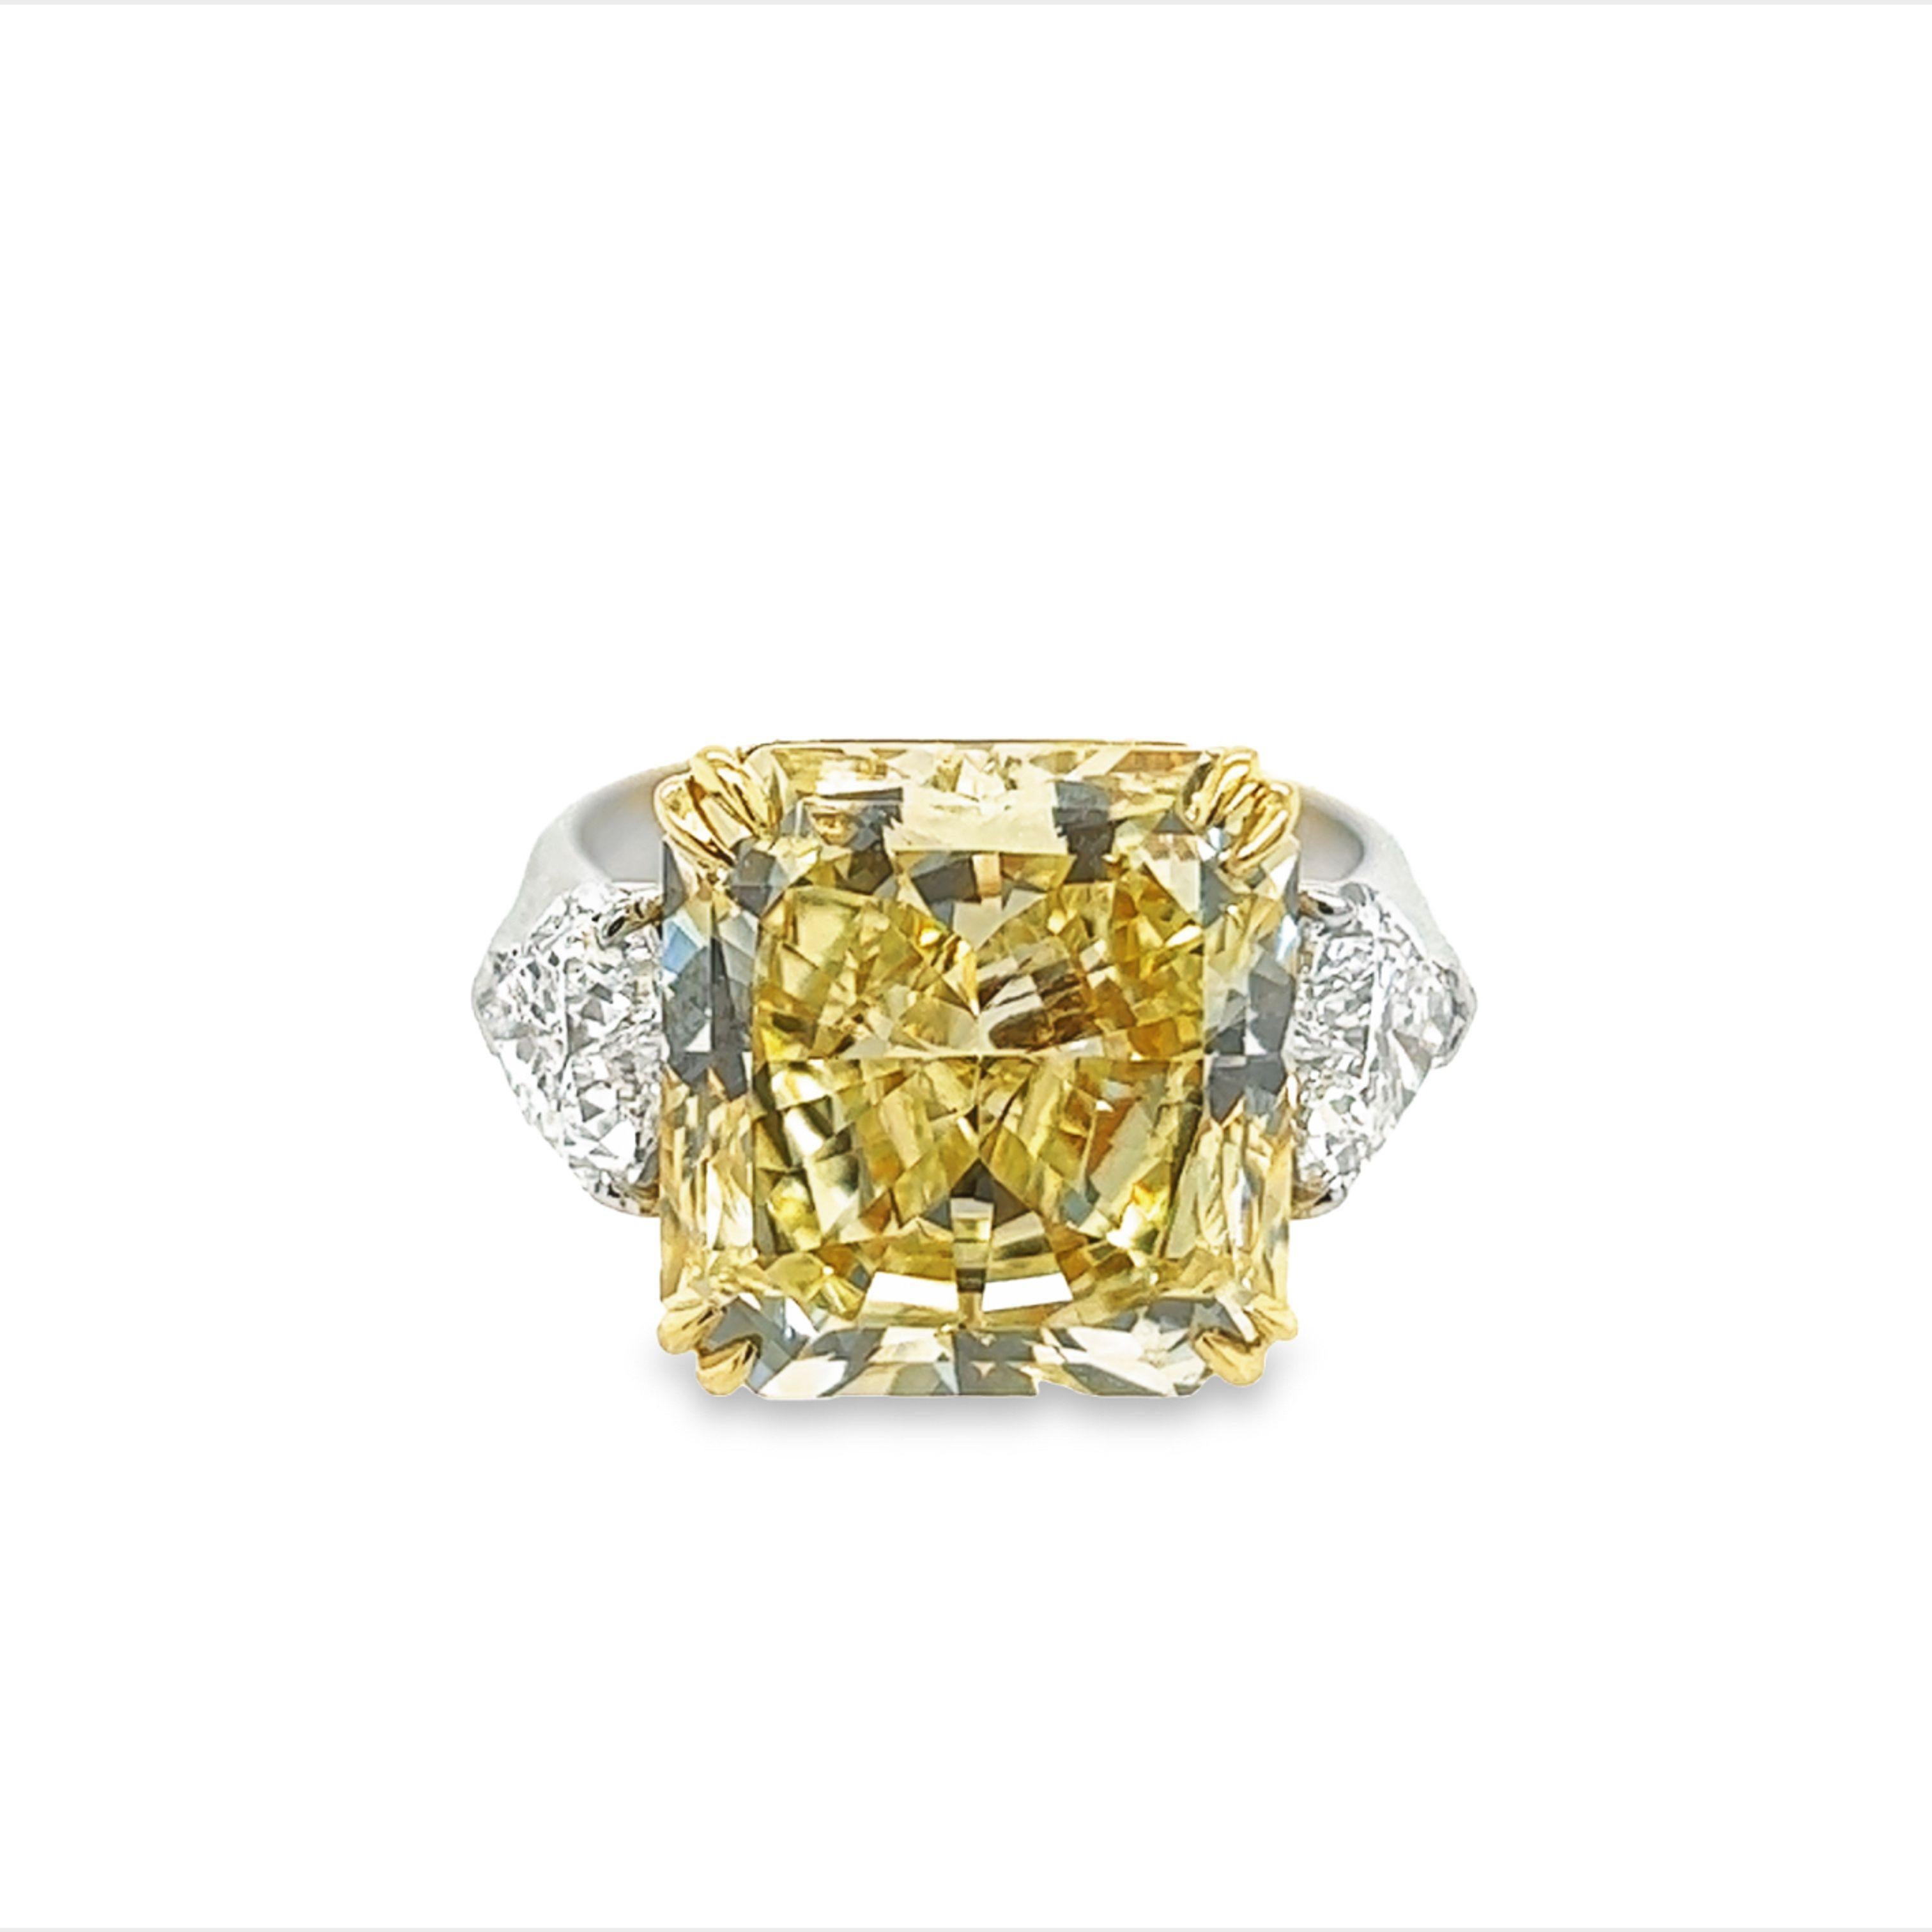 Rosenberg Diamonds and Co. Cette pièce de 10,23 carats de couleur jaune radieux et de pureté VVS1 est accompagnée d'un certificat GIA. Cette extraordinaire taille rayonnante est sertie dans une monture en platine et or jaune 18 carats faite à la